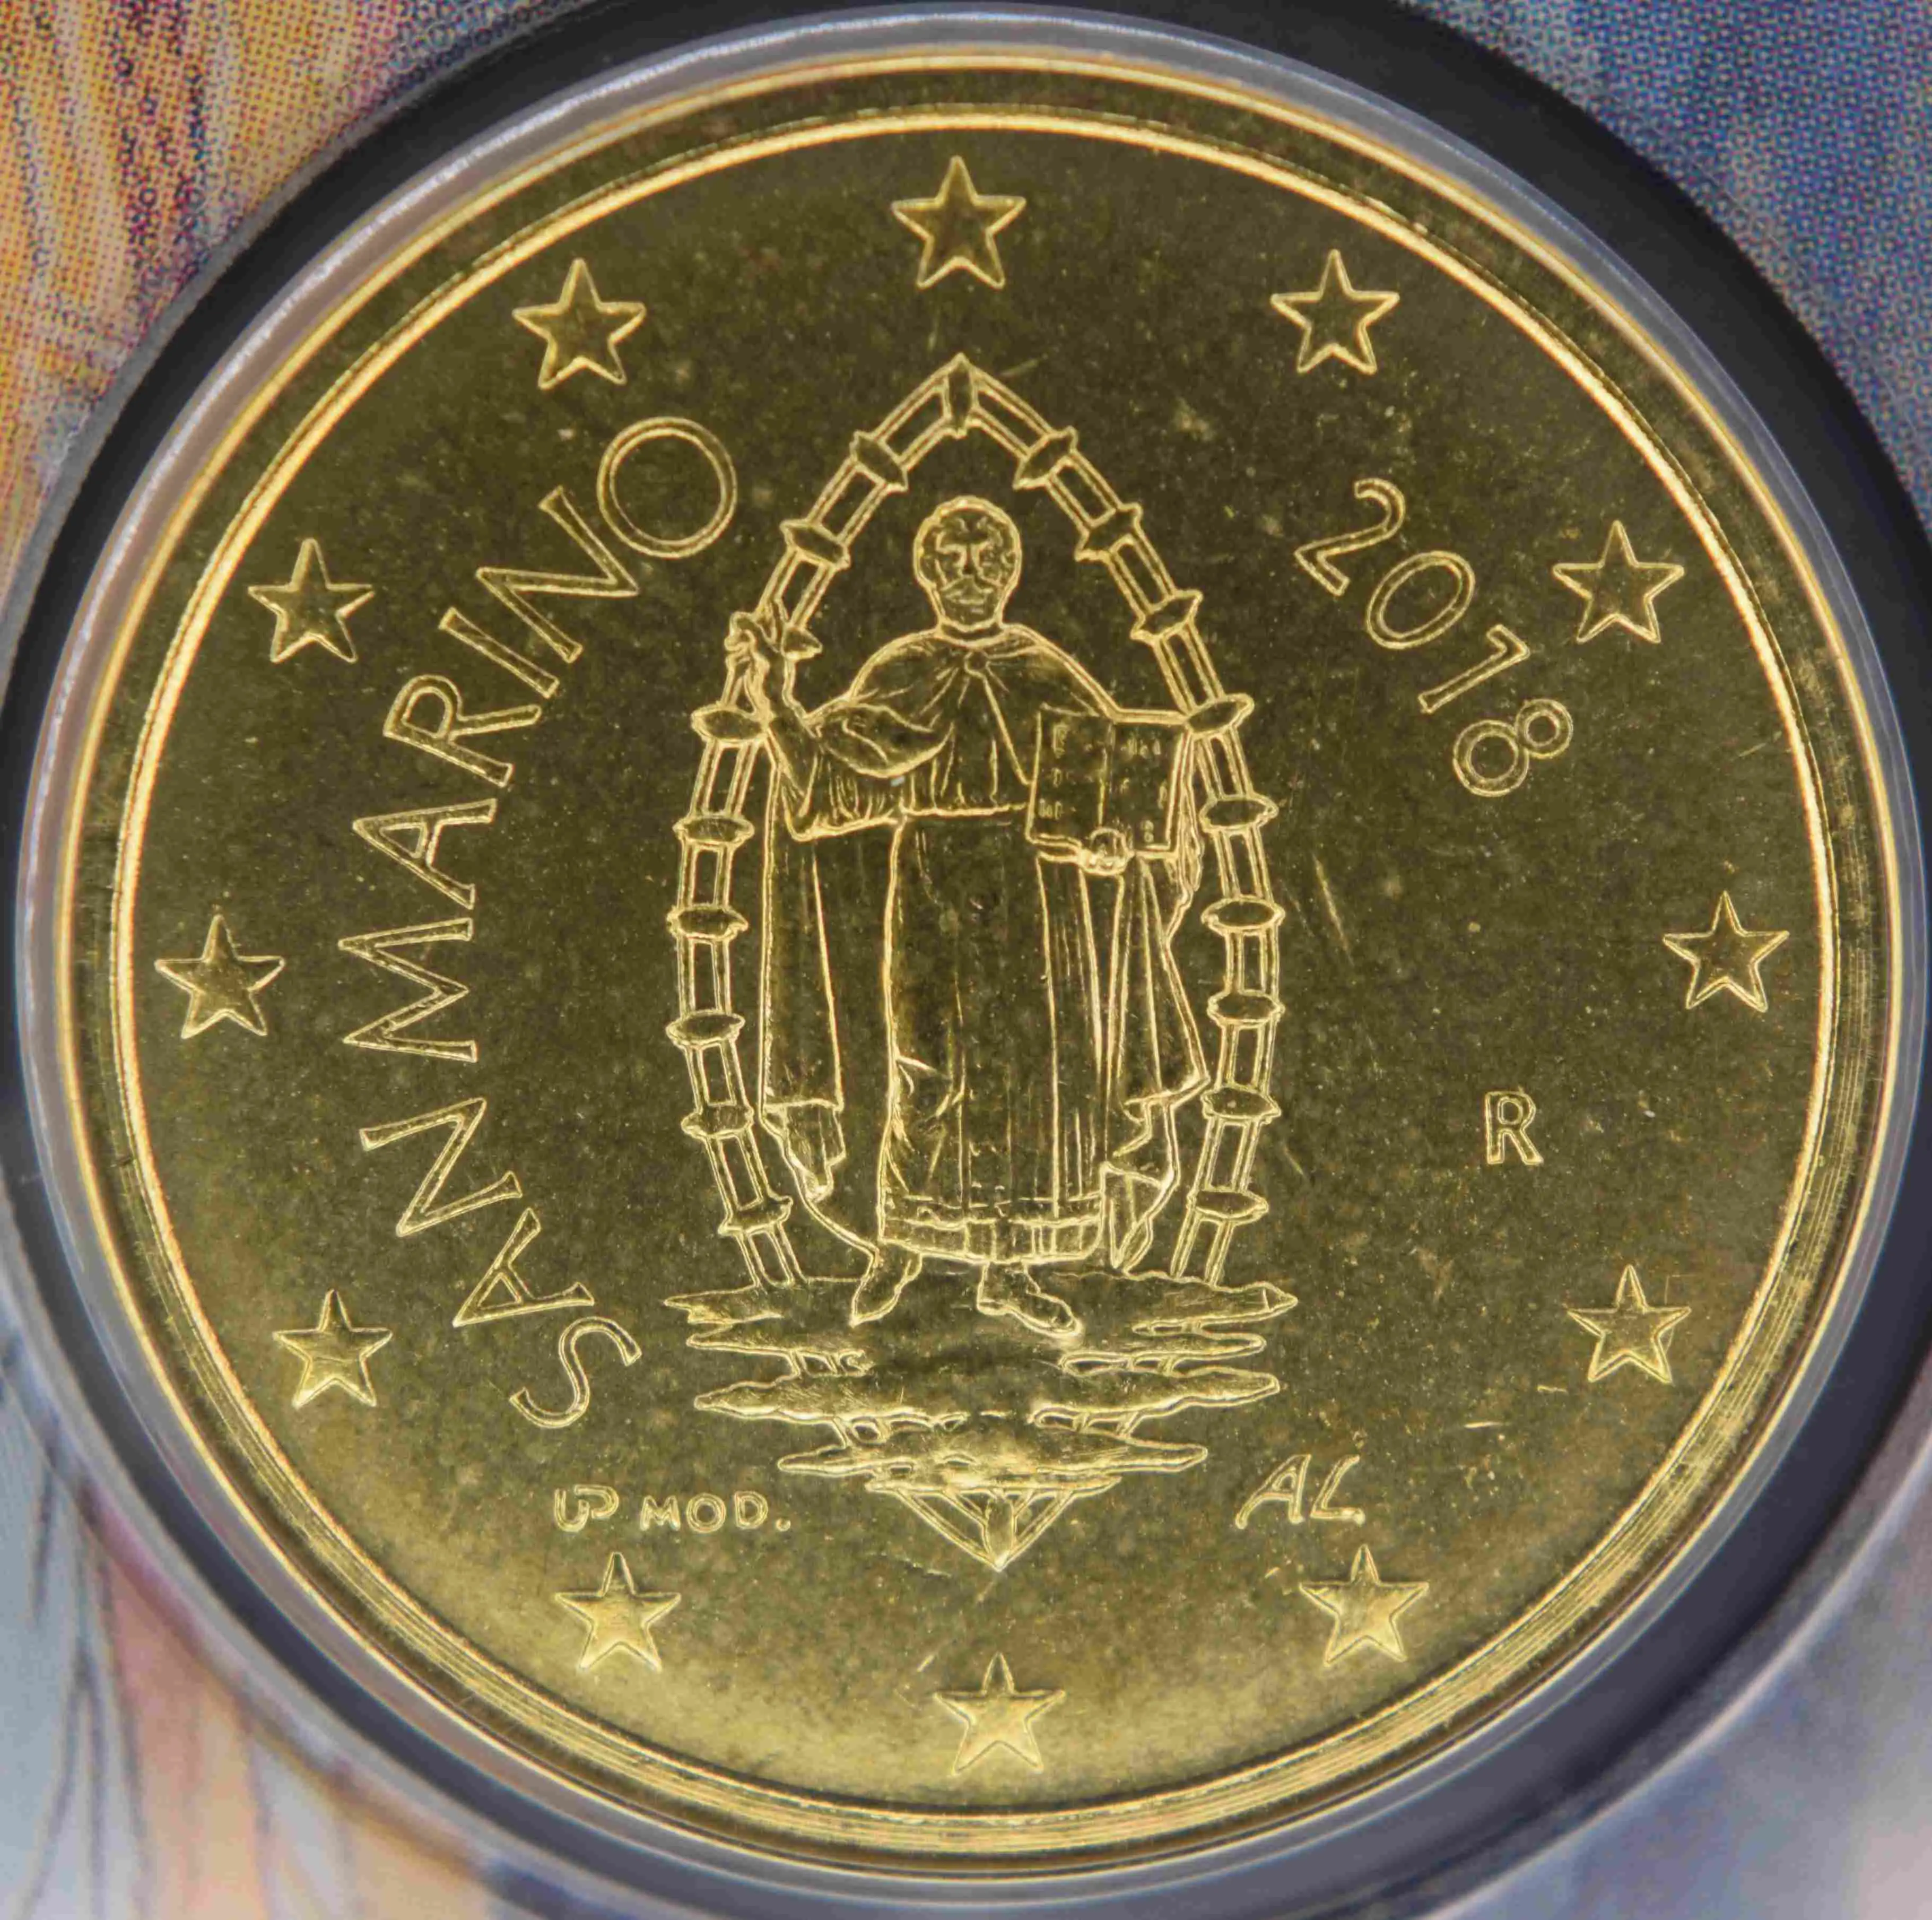 San Marino Euro Kursmünzen 2018 ᐅ Wert, Infos und Bilder bei euro